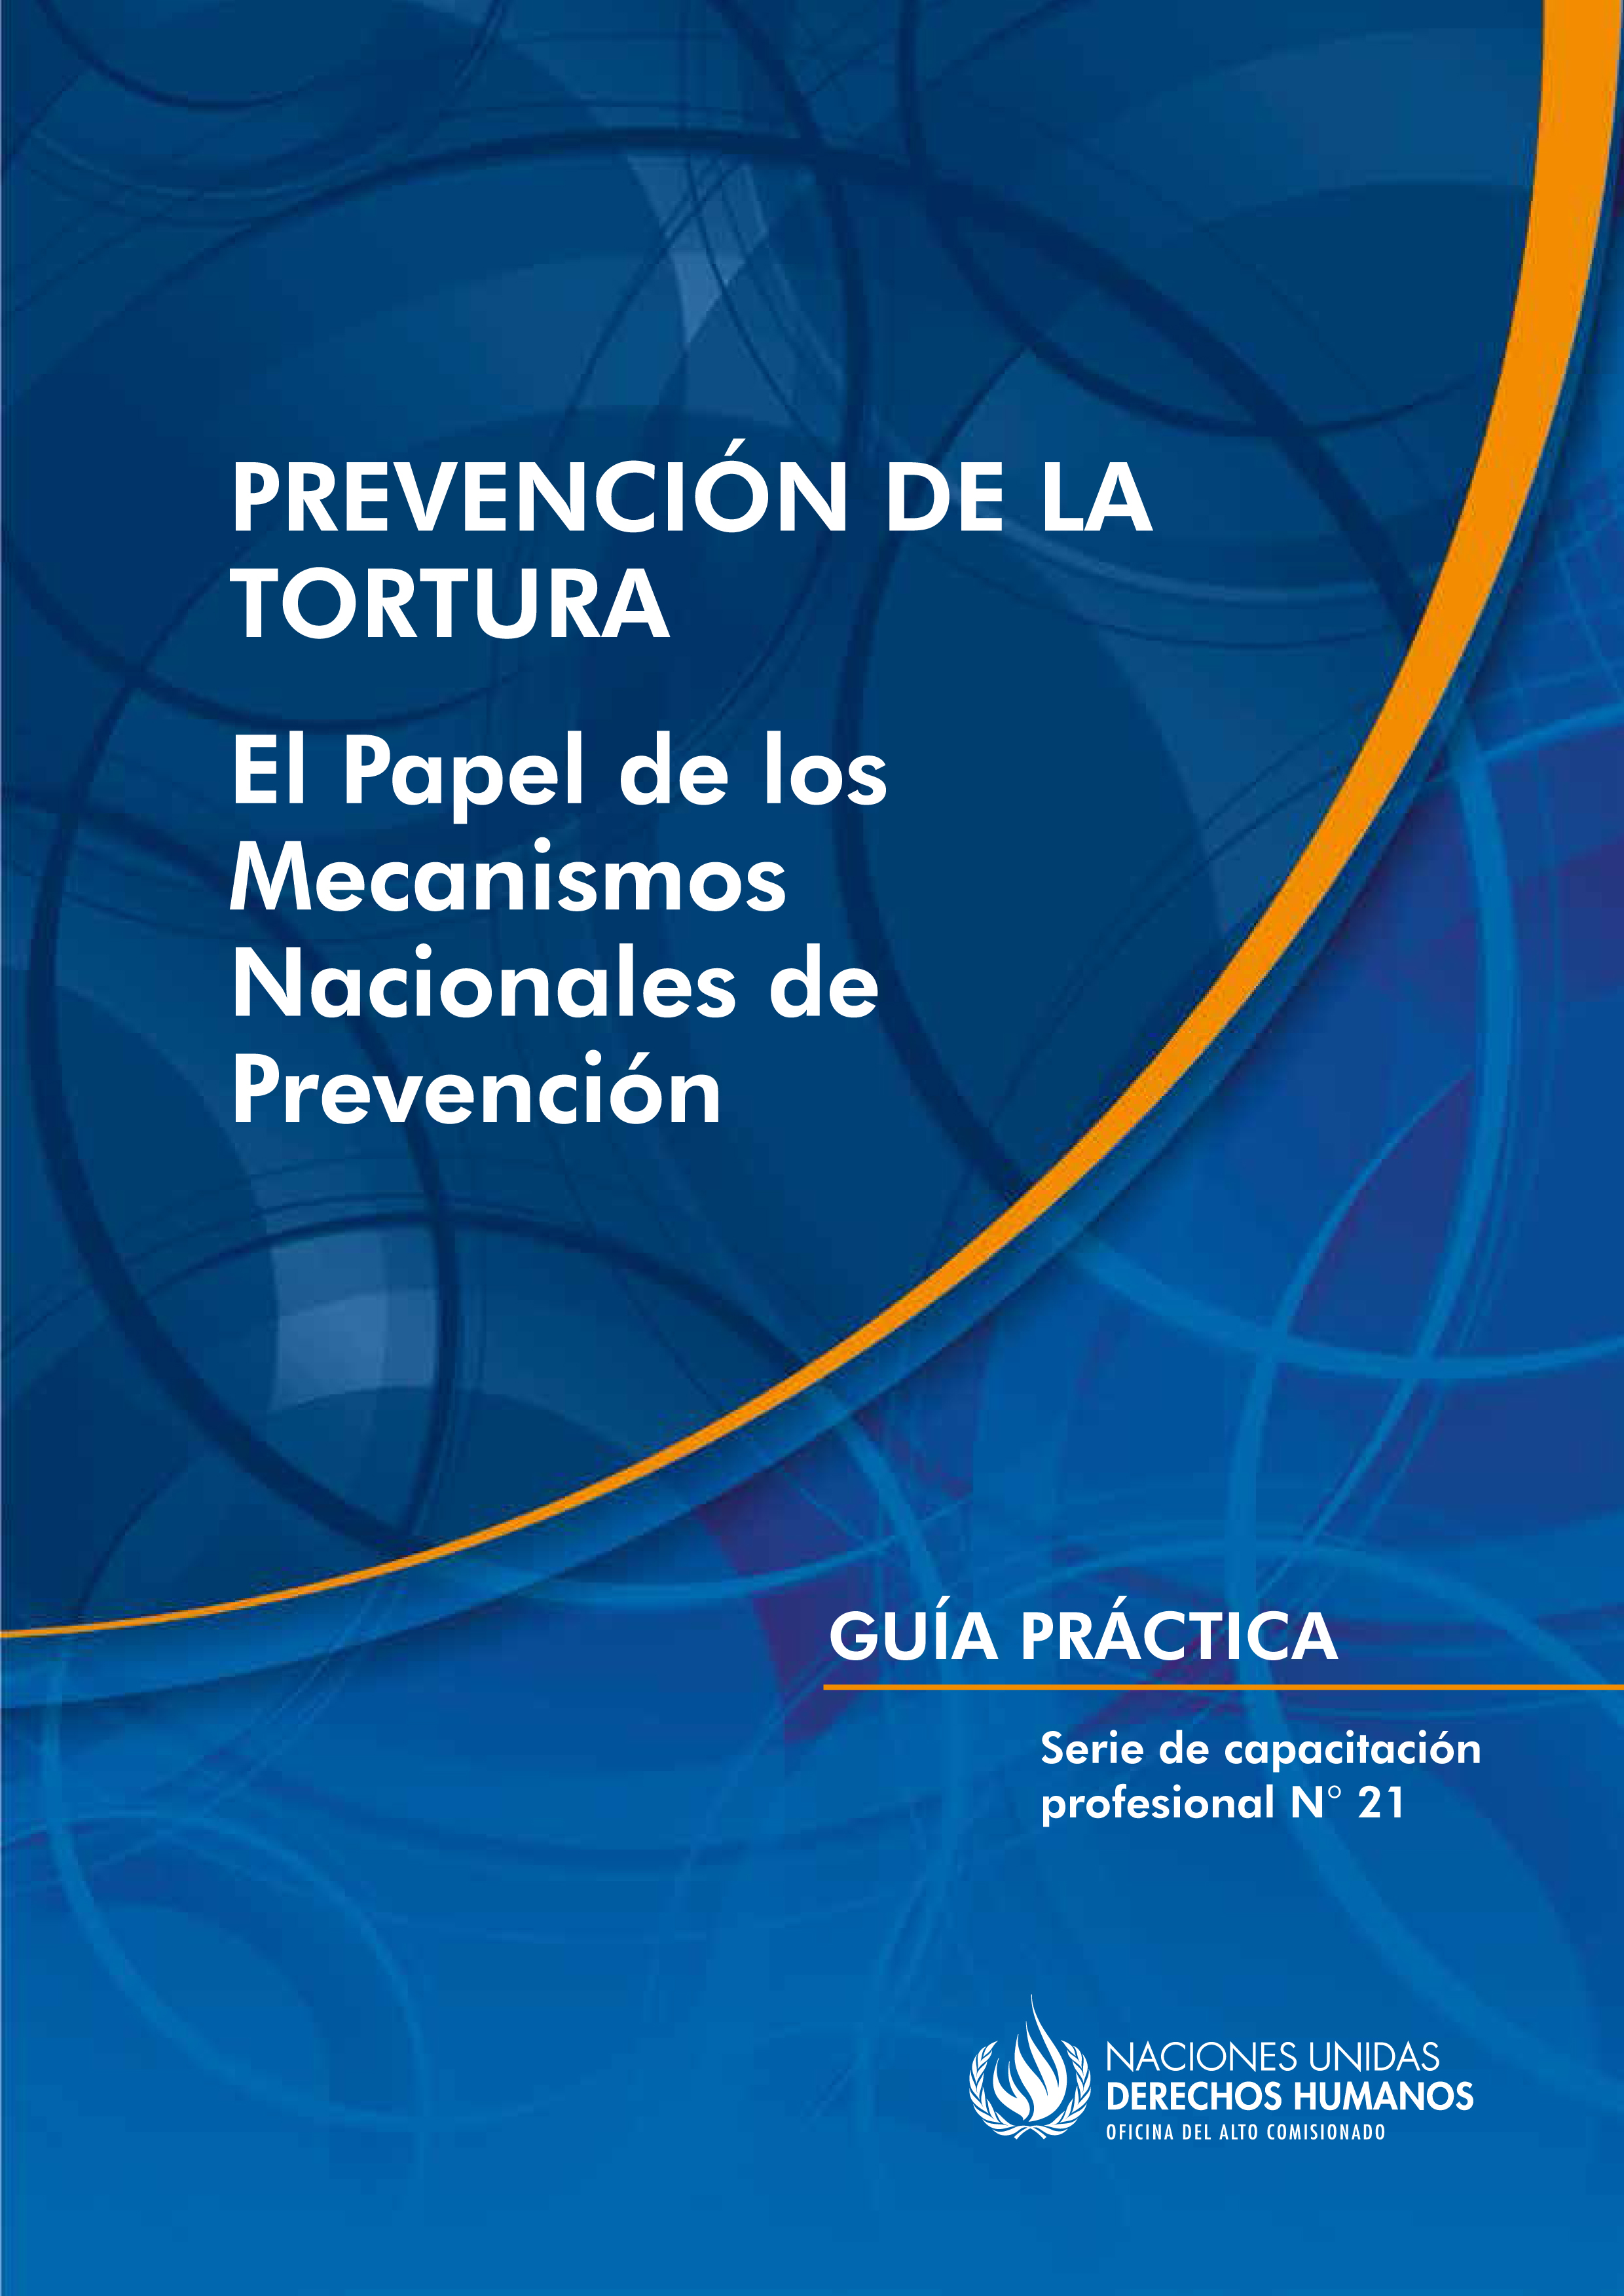 image of Prevención de la tortura: El Papel de los mecanismos nacionales de prevención - guía práctica